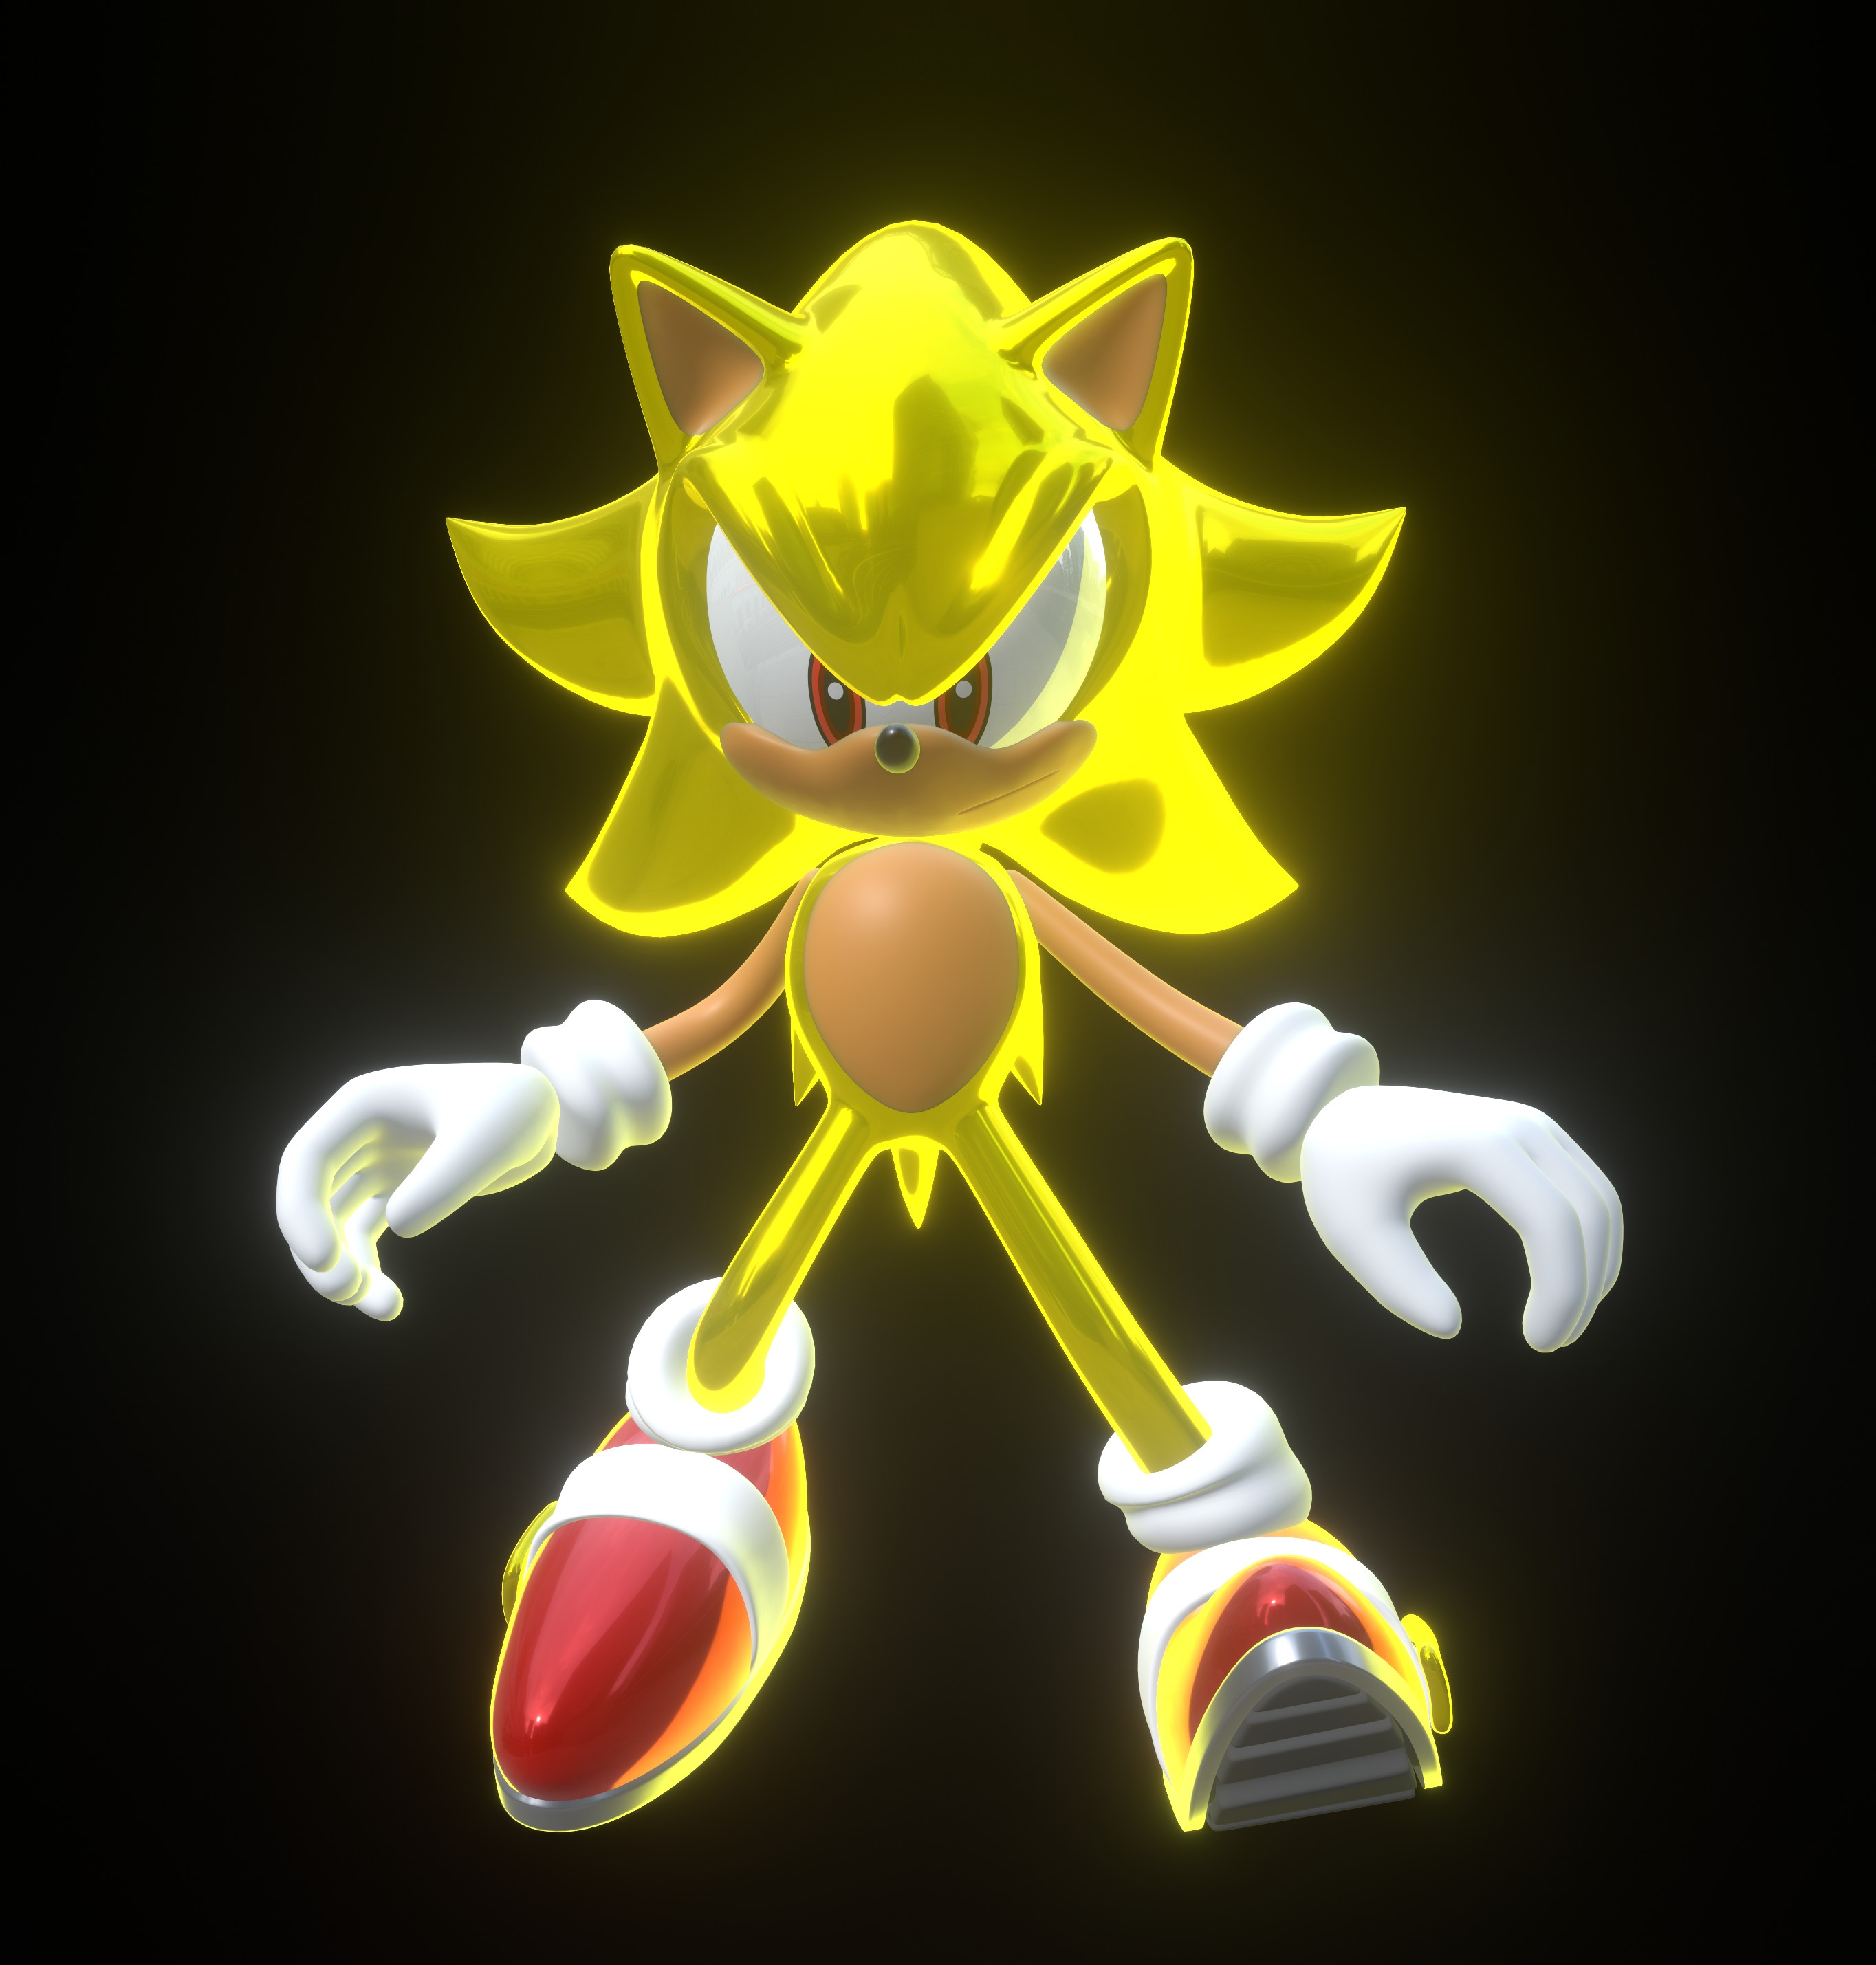 TAS] Super Sonic & Hyper Sonic in Sonic 1 - Speedrun 